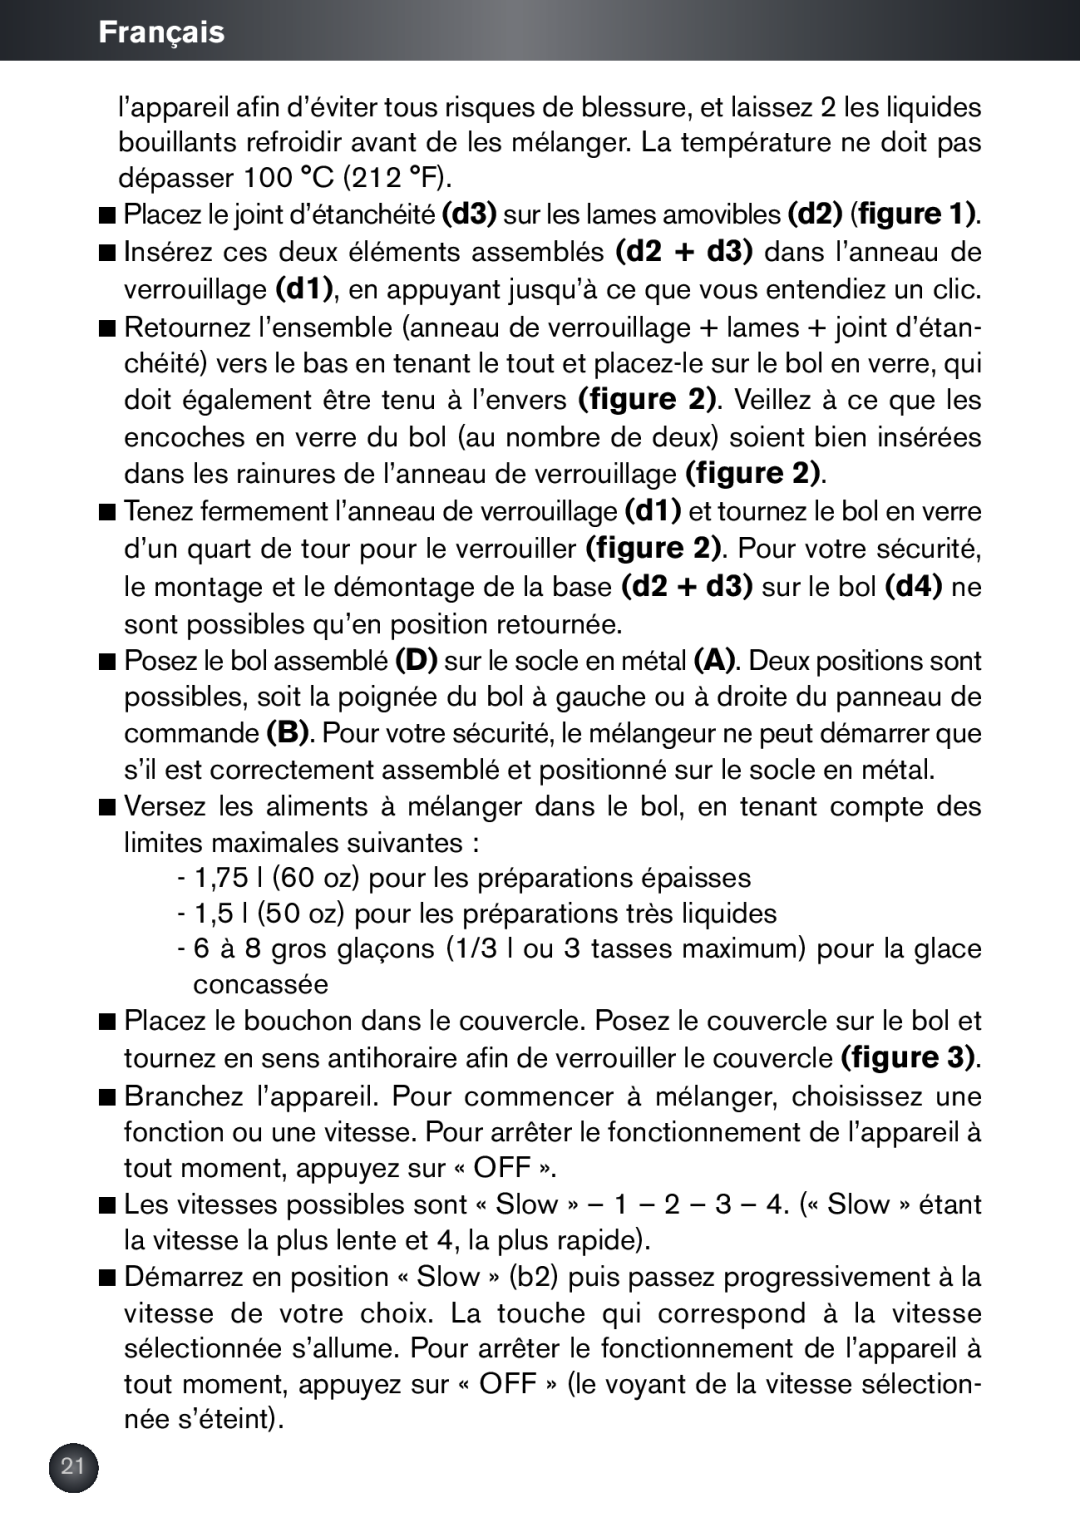 Krups KB790 manual Français, Placez le joint d’étanchéité d3 sur les lames amovibles d2 figure 